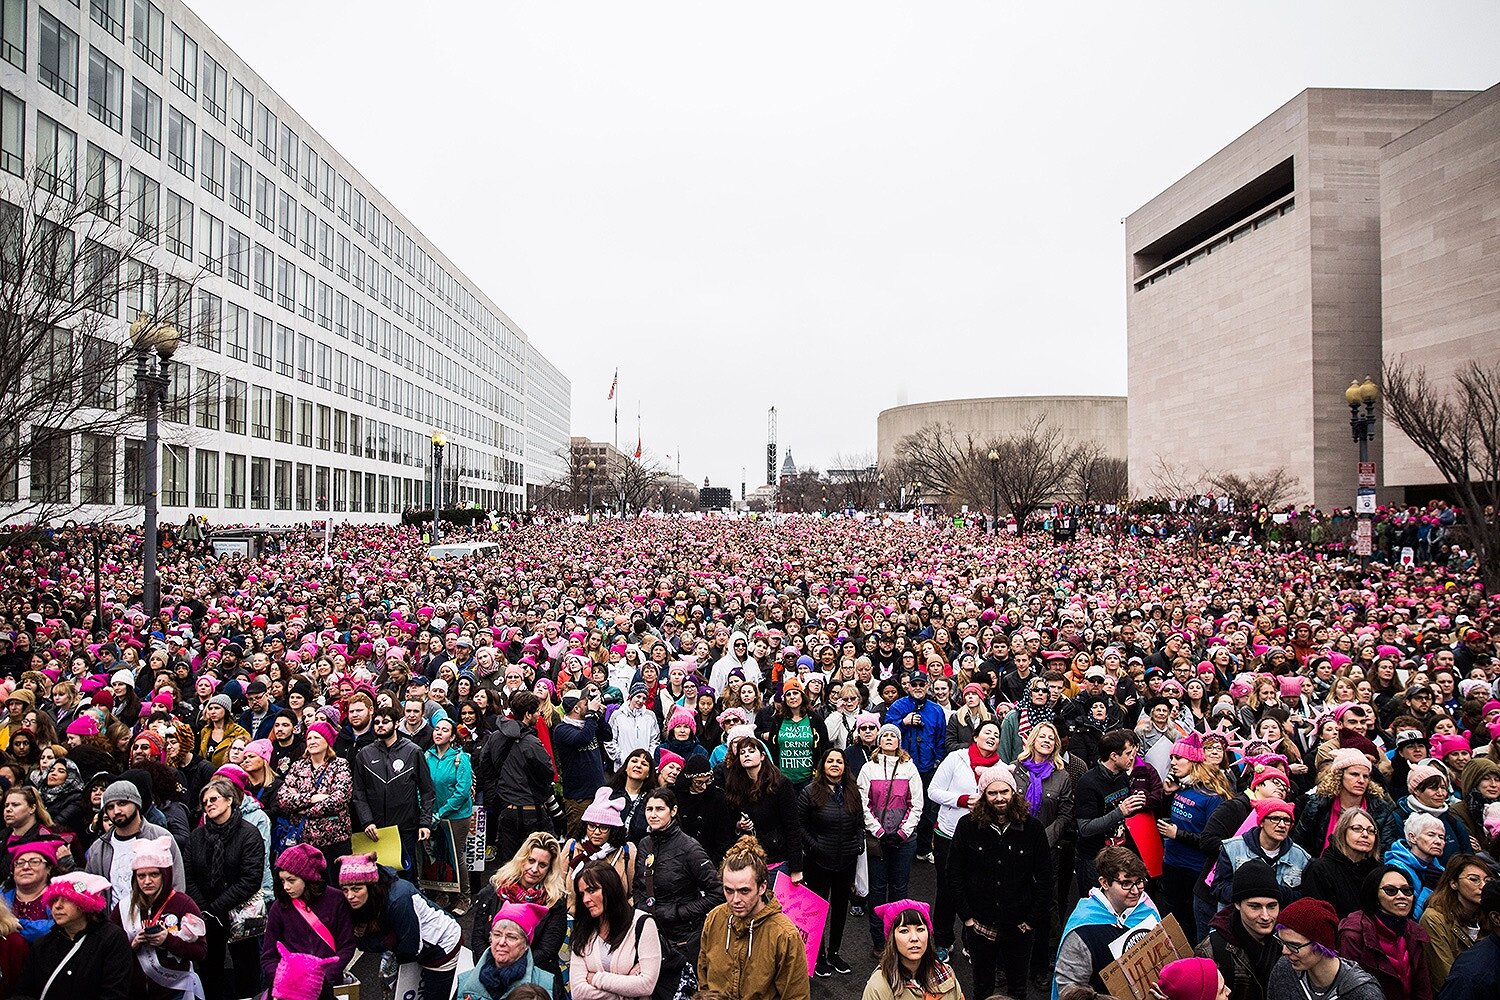 <p>Организаторы акции протеста сообщили о сотнях тысячах участников в Вашингтоне, Нью-Йорке и Лос-Анджелесе.</p>

<p>&nbsp;</p>